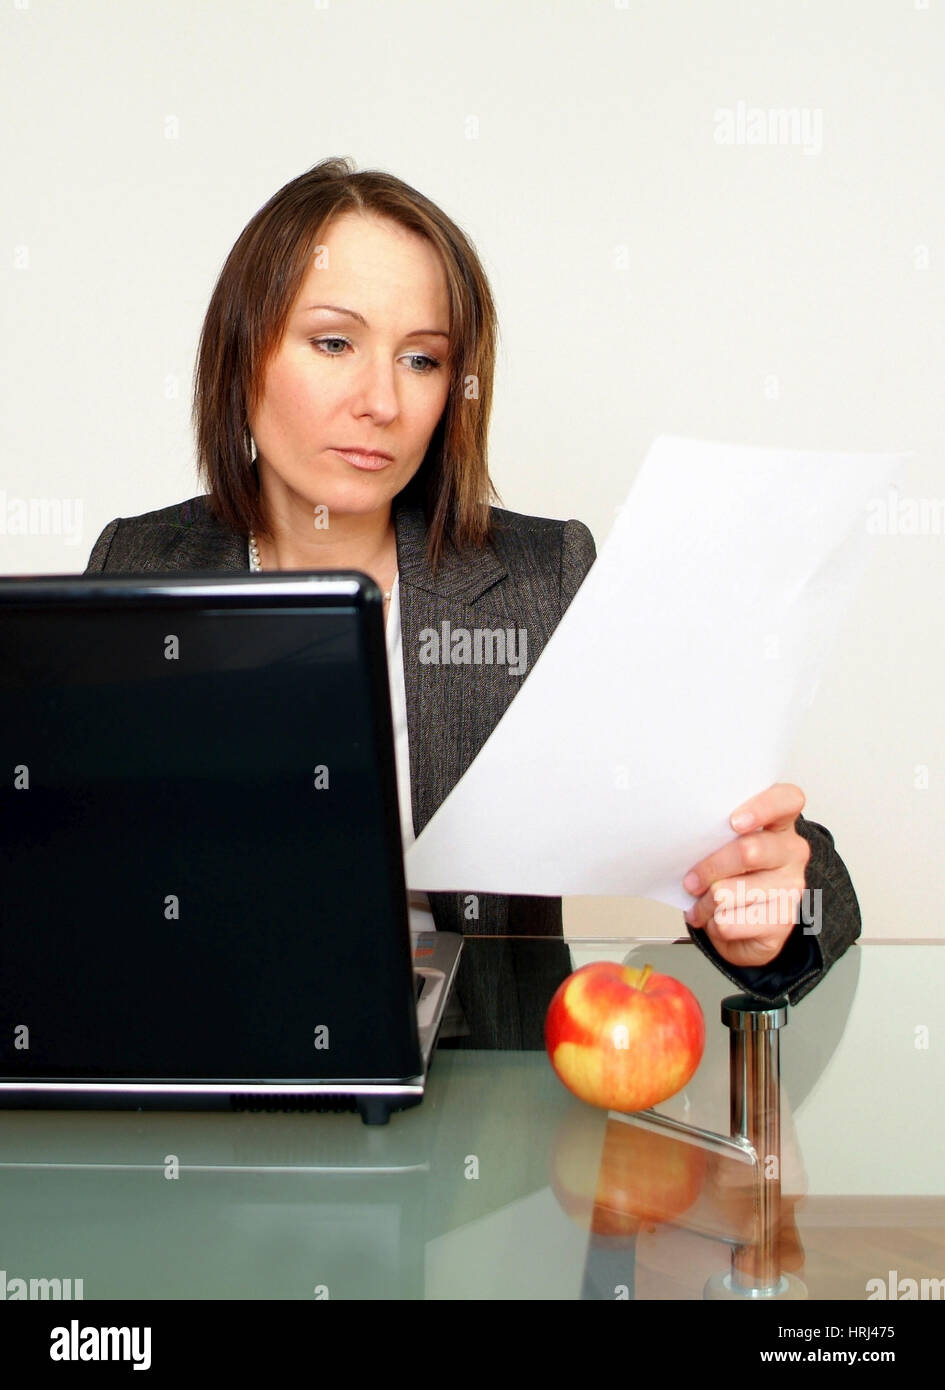 Gesch?ftsfrau arbeitet am Notebook, daneben liegt ein Apfel - business woman using laptop, aside an apple Stock Photo